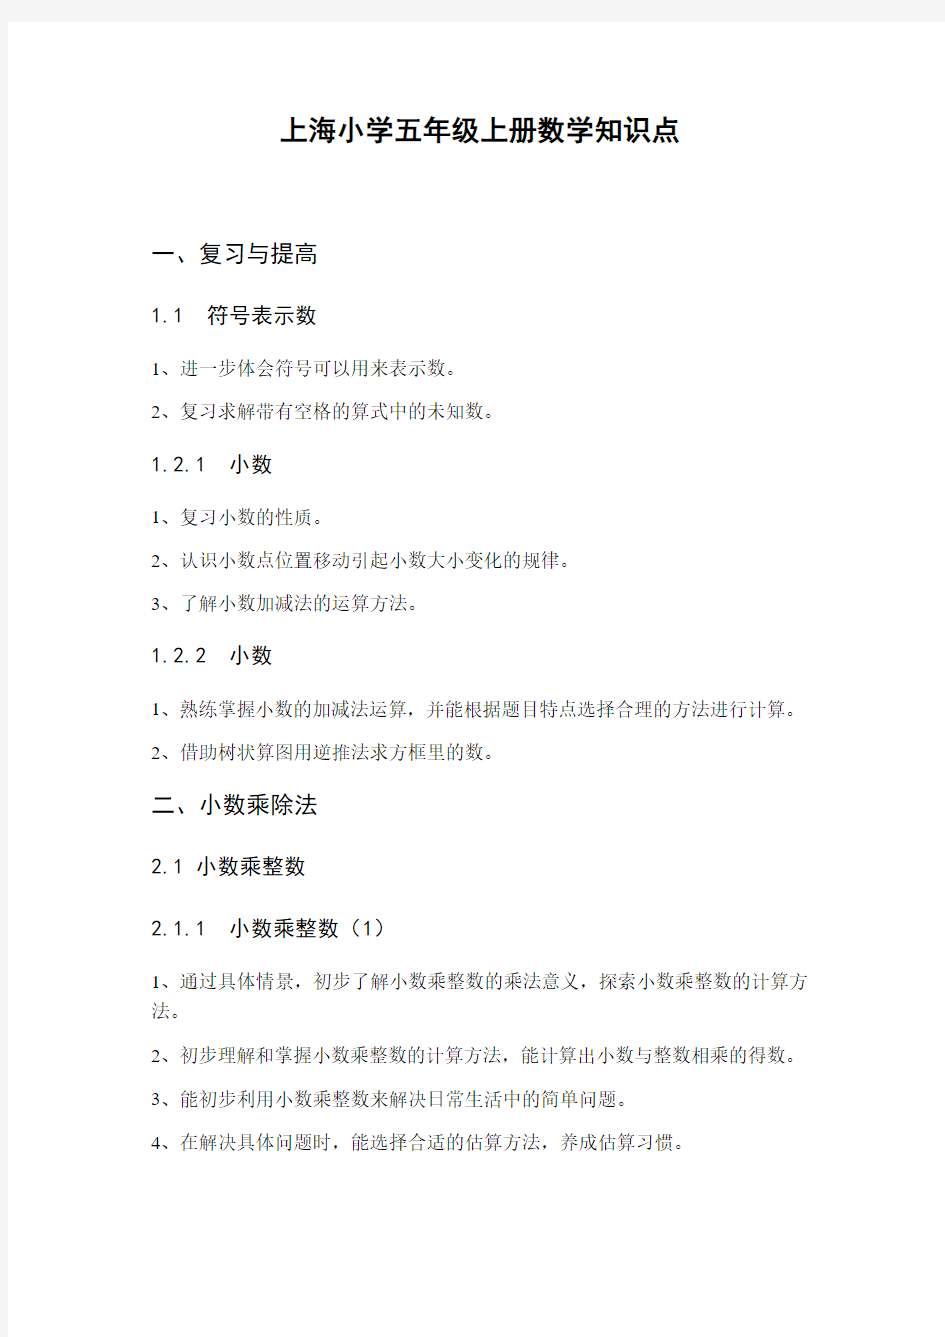 9-上海小学五年级上册数学详细知识点